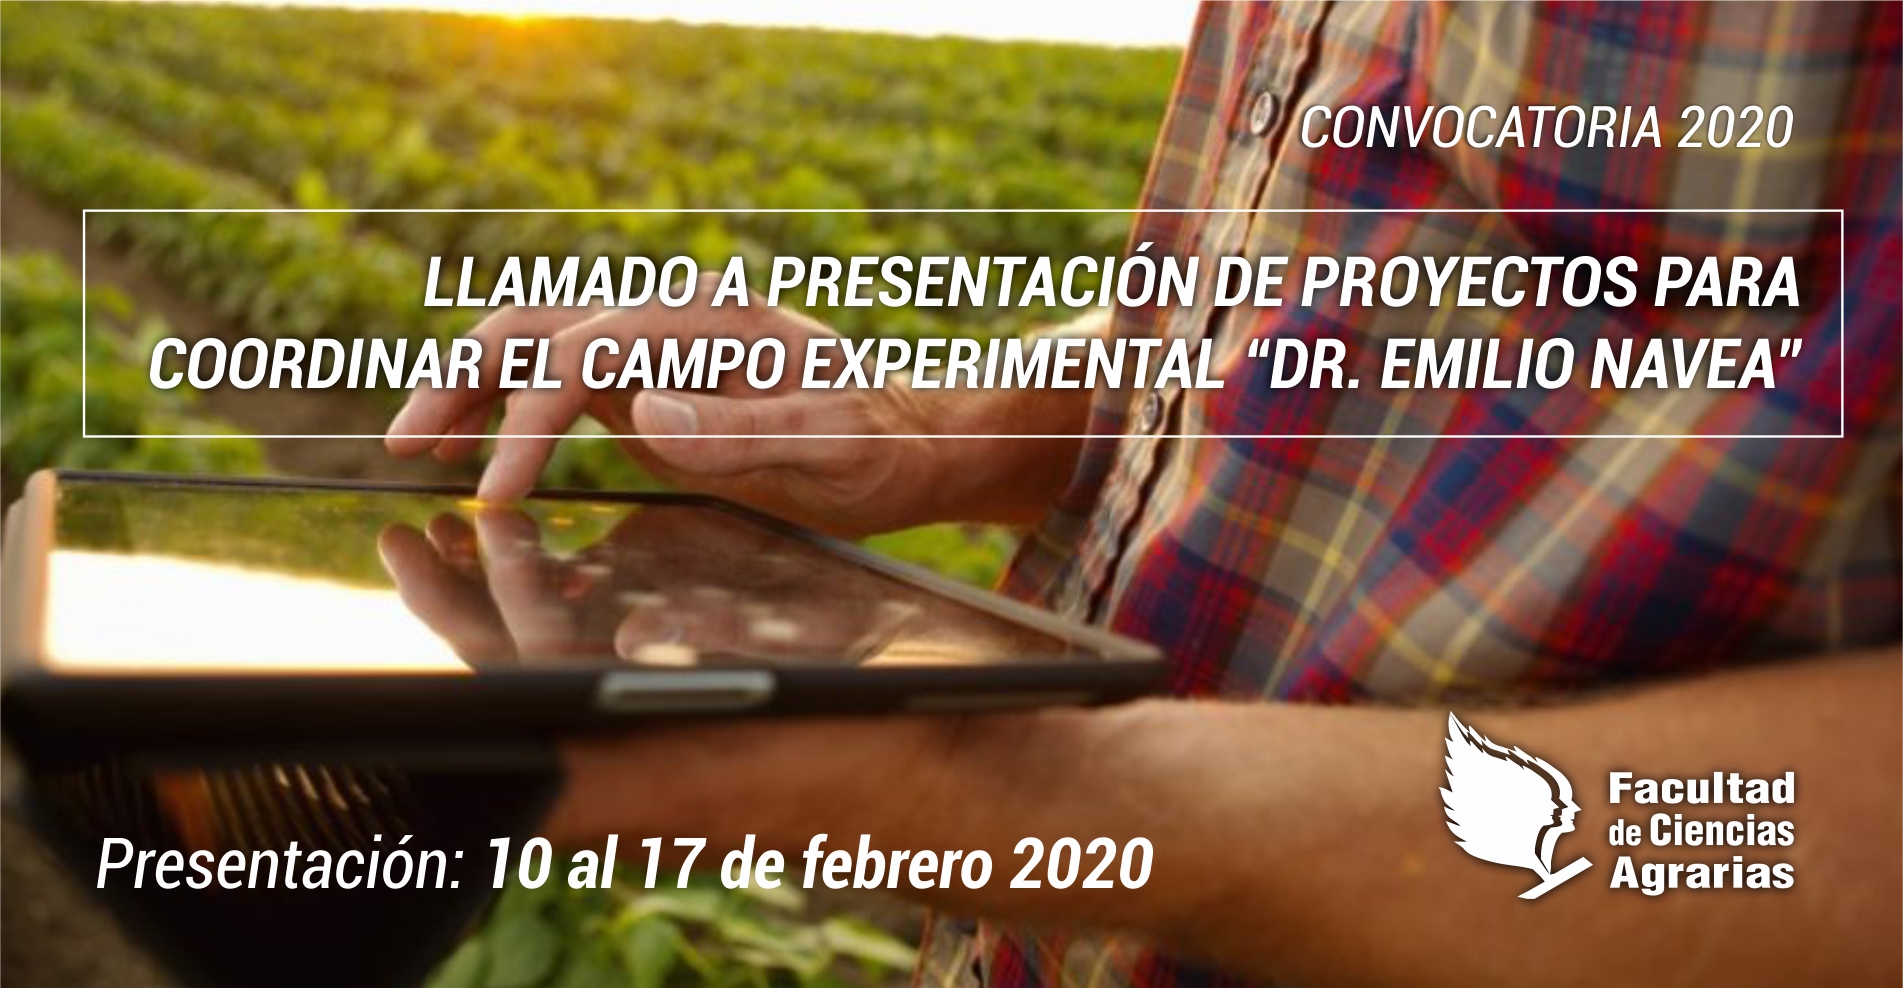 CONVOCATORIA 2020| Llamado a presentación de proyectos para Coordinar el Campo Experimental "Emilio